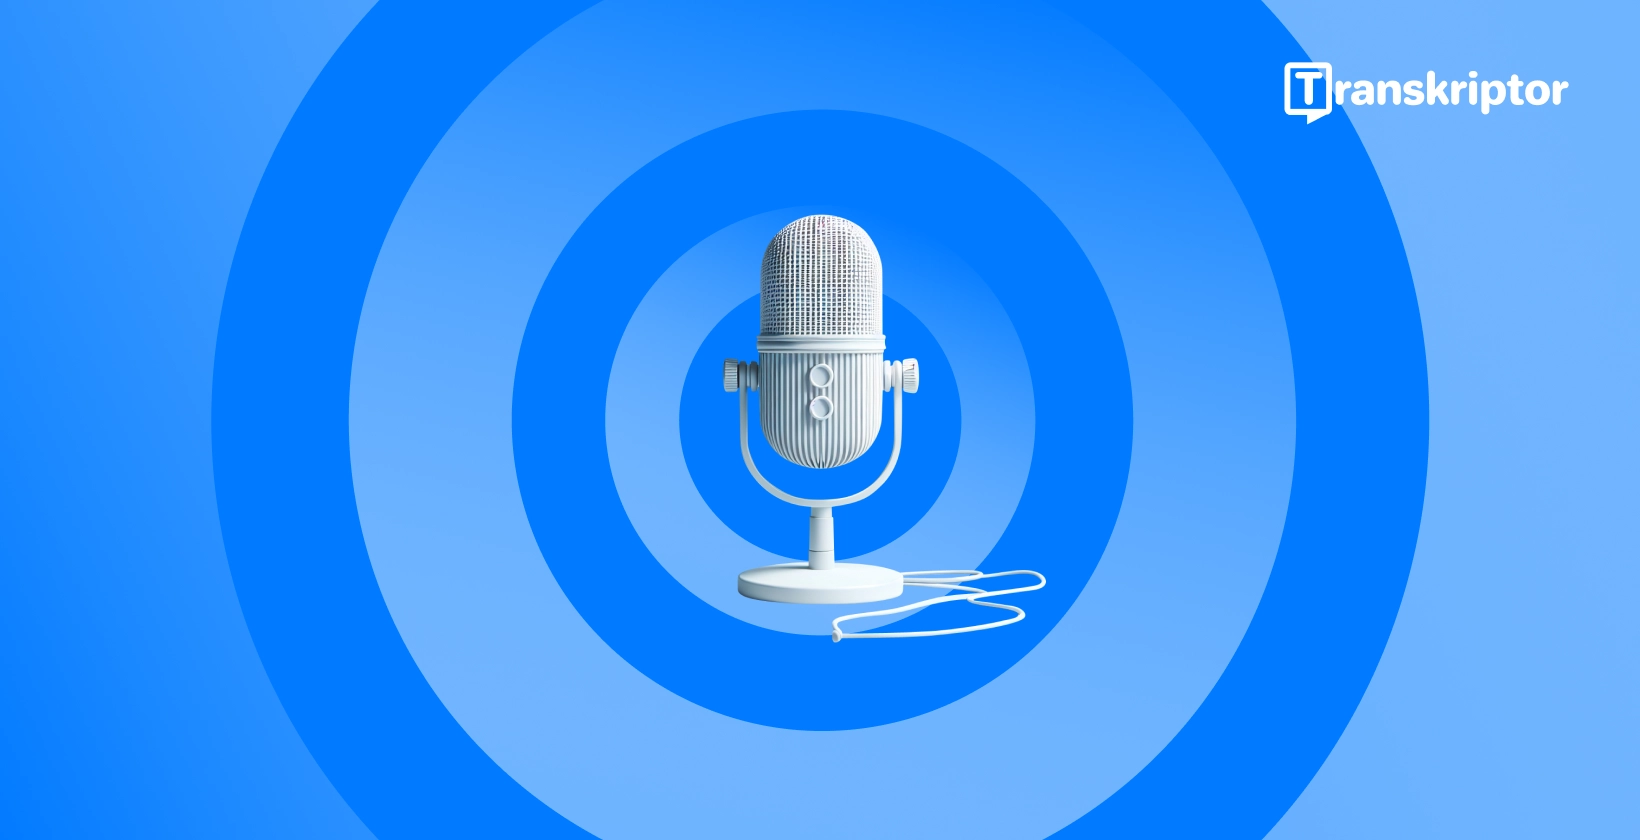 नीले रंग की पृष्ठभूमि के खिलाफ एक आधुनिक माइक्रोफोन सेट, Microsoft Word में आवाज श्रुतलेख सुविधाओं का प्रतीक है।